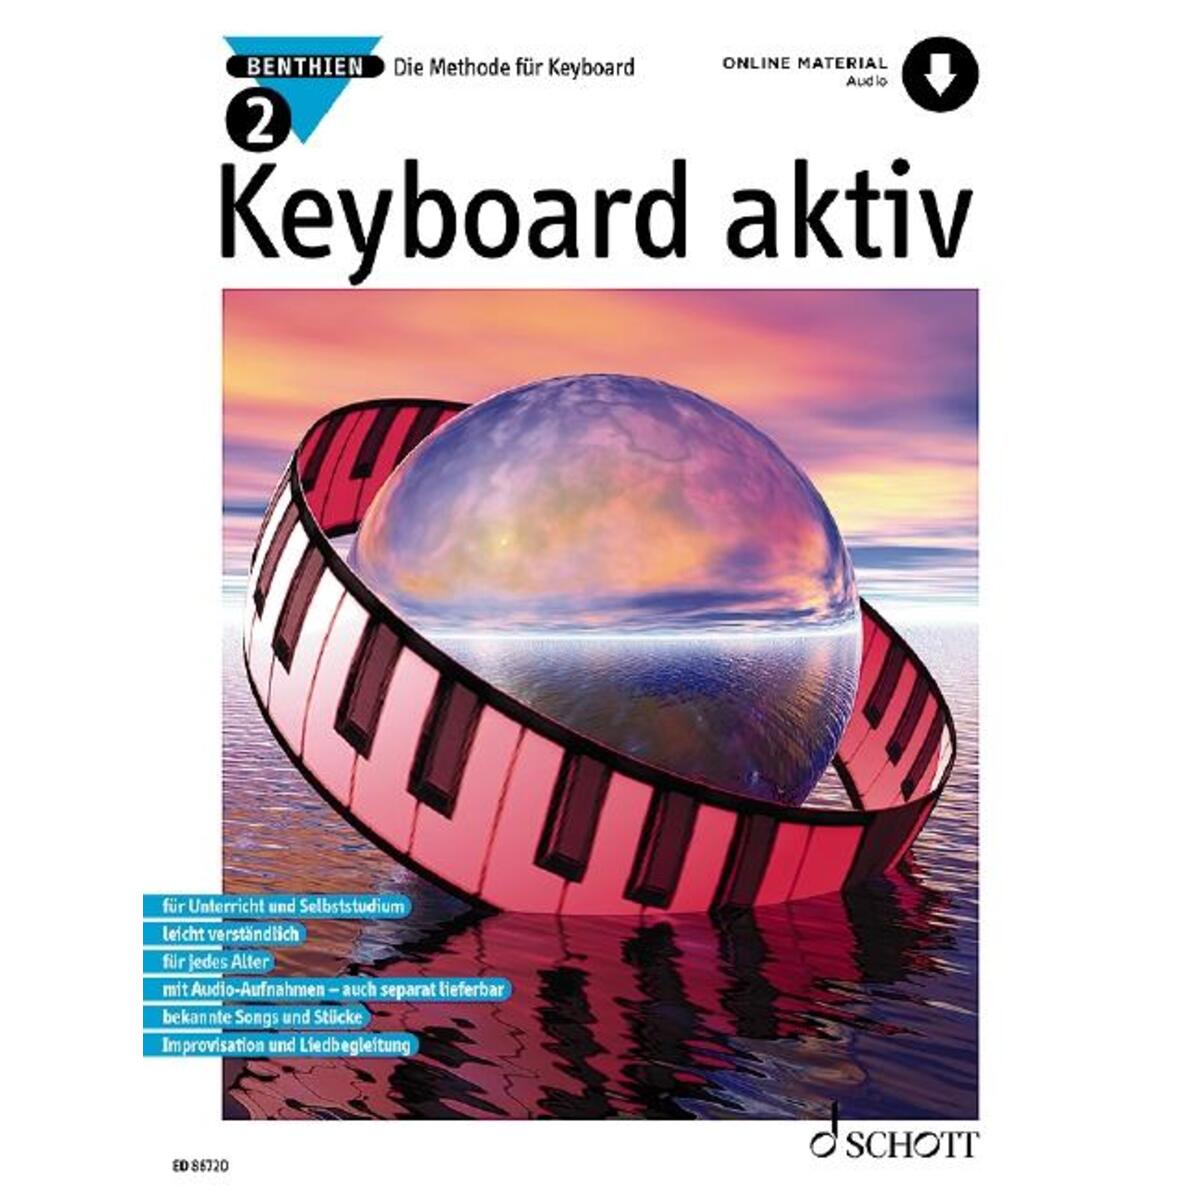 Keyboard aktiv von Schott Music